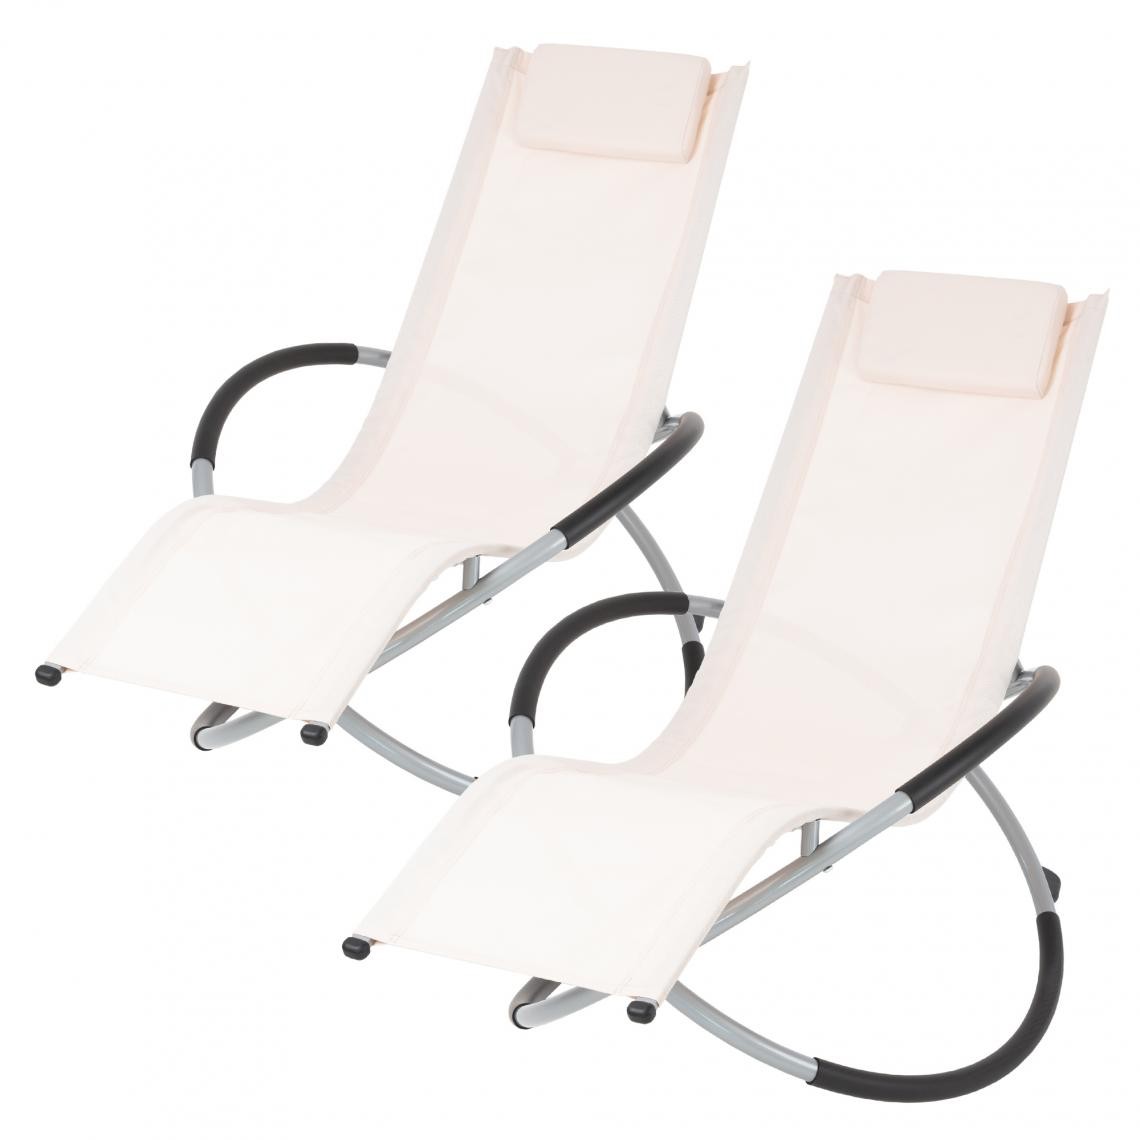 Ecd Germany - 2x Chaise longue pliable fauteuil relax de jardin extérieur rocking chair créme - Transats, chaises longues